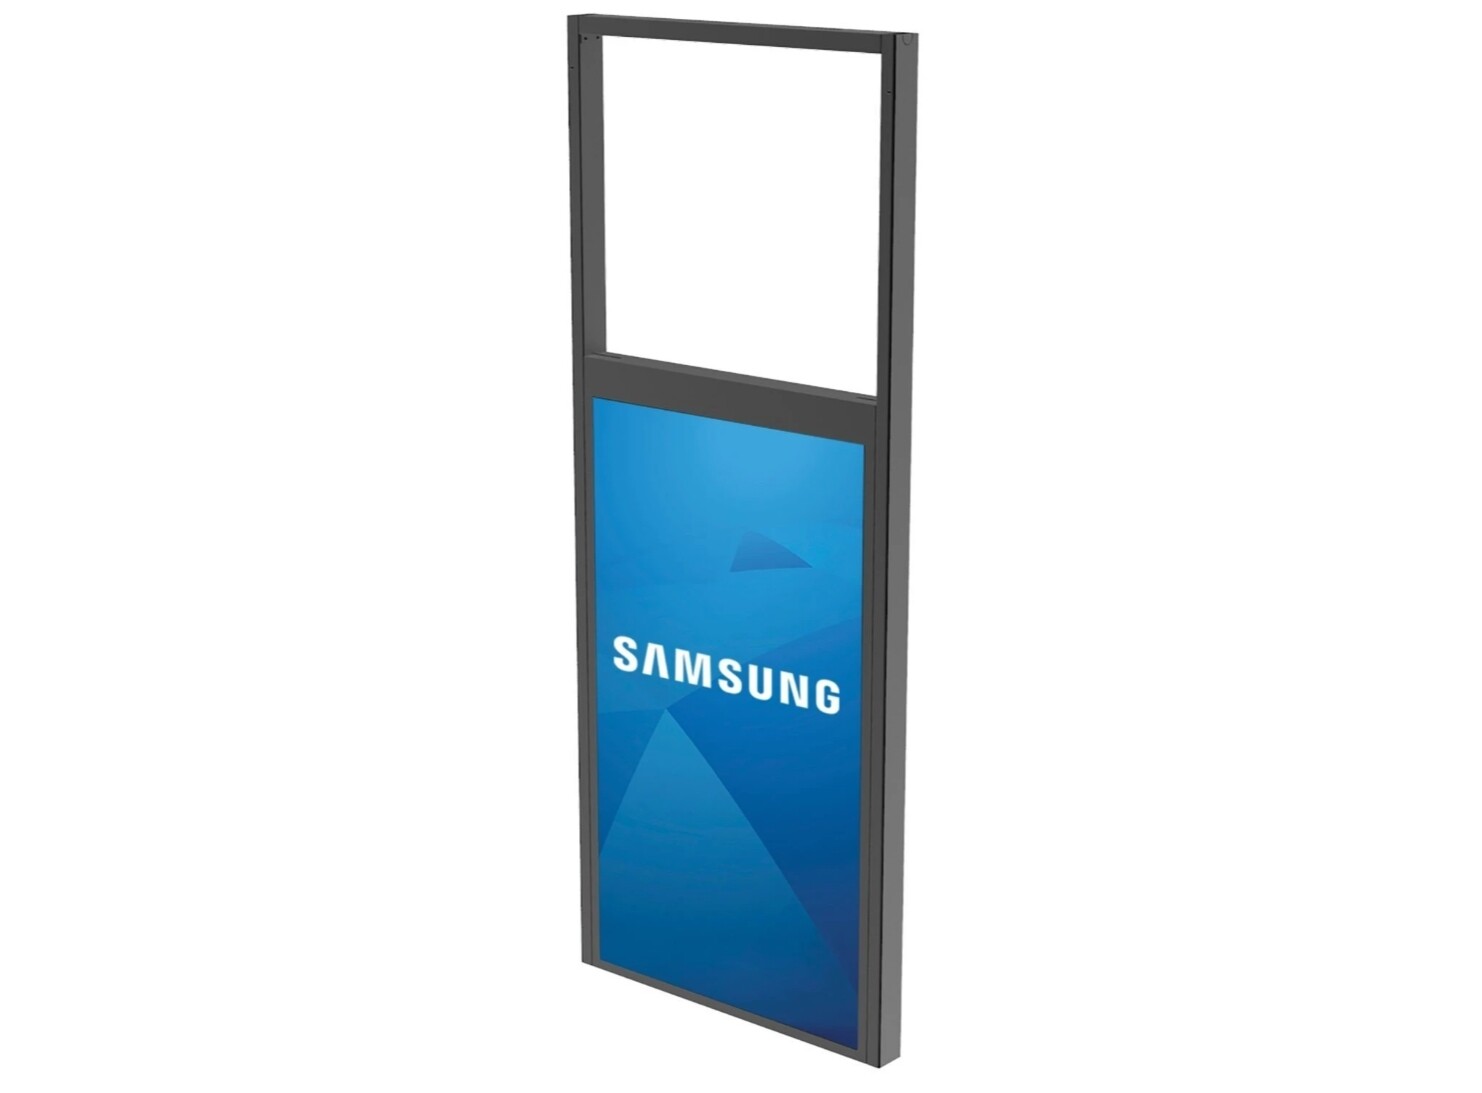 Peerless-SmartMount-DS-OM55ND-Plafondbeugel-voor-LCD-scherm-mat-zwart-schermgrootte-139-7-cm-55